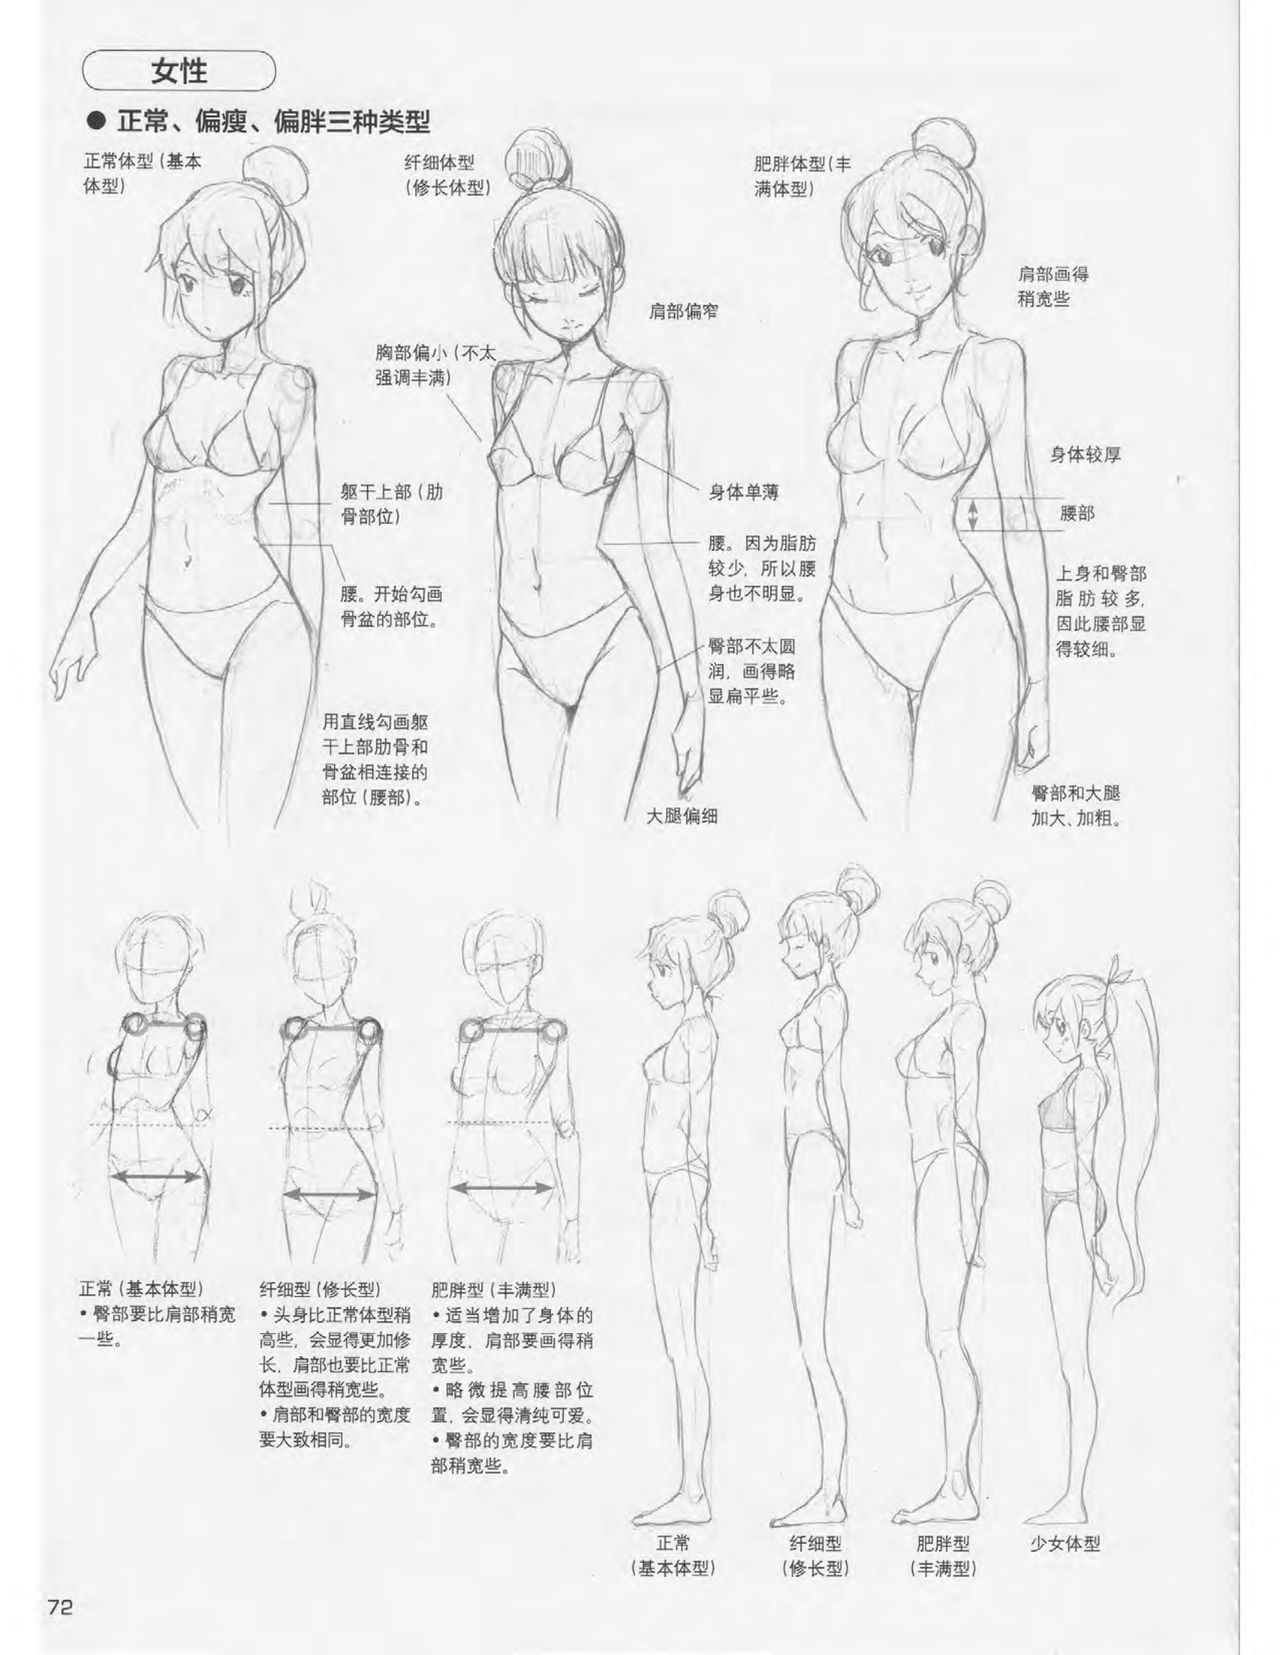 Japanese Manga Master Lecture 3: Lin Akira and Kakumaru Maru Talk About Glamorous Character Modeling 72